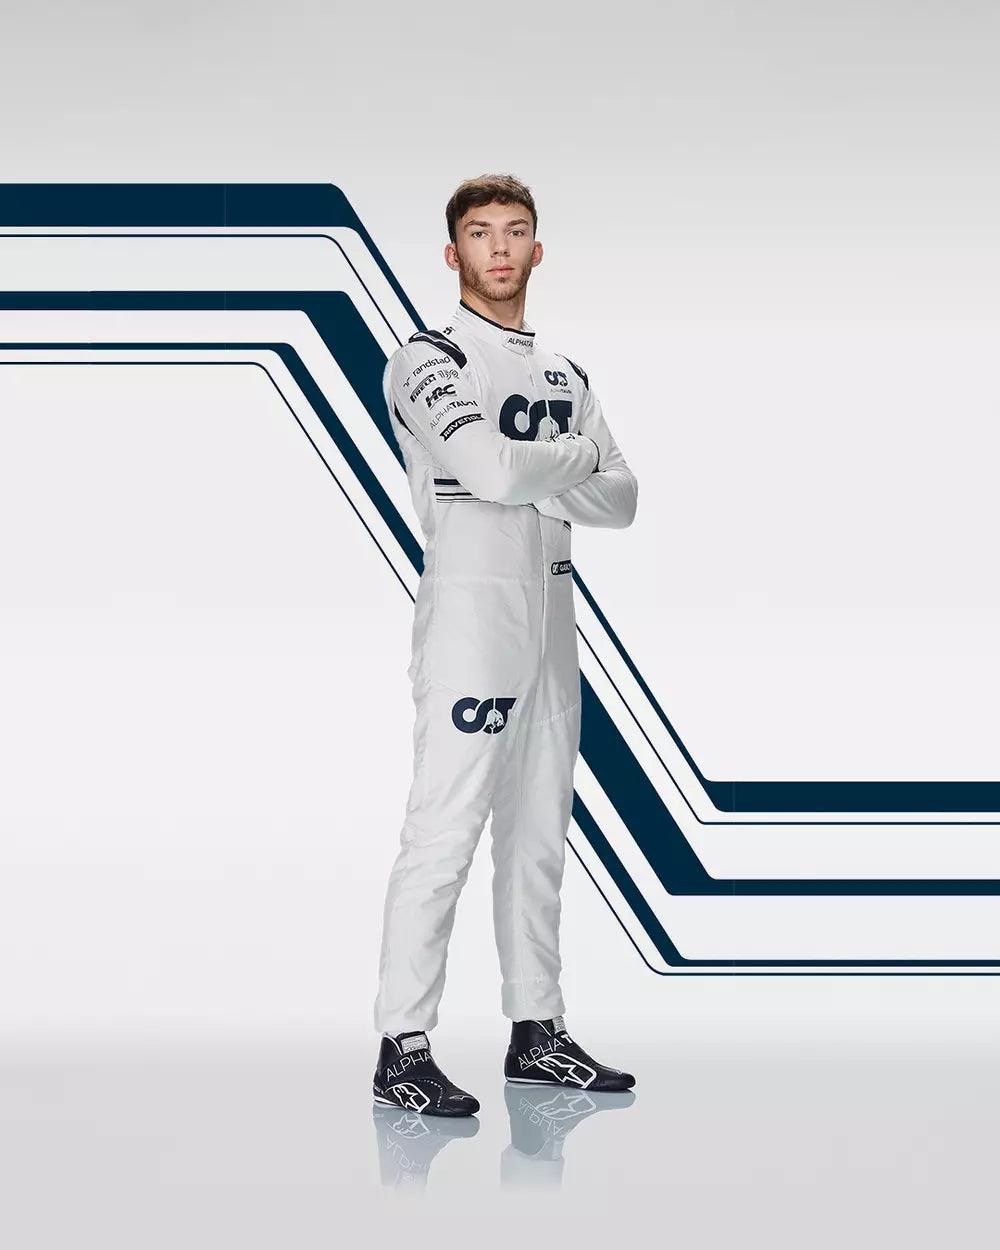 2022 Pierre Gasly Alphatauri Scuderia F1 Race Boots - Dash Racegear 